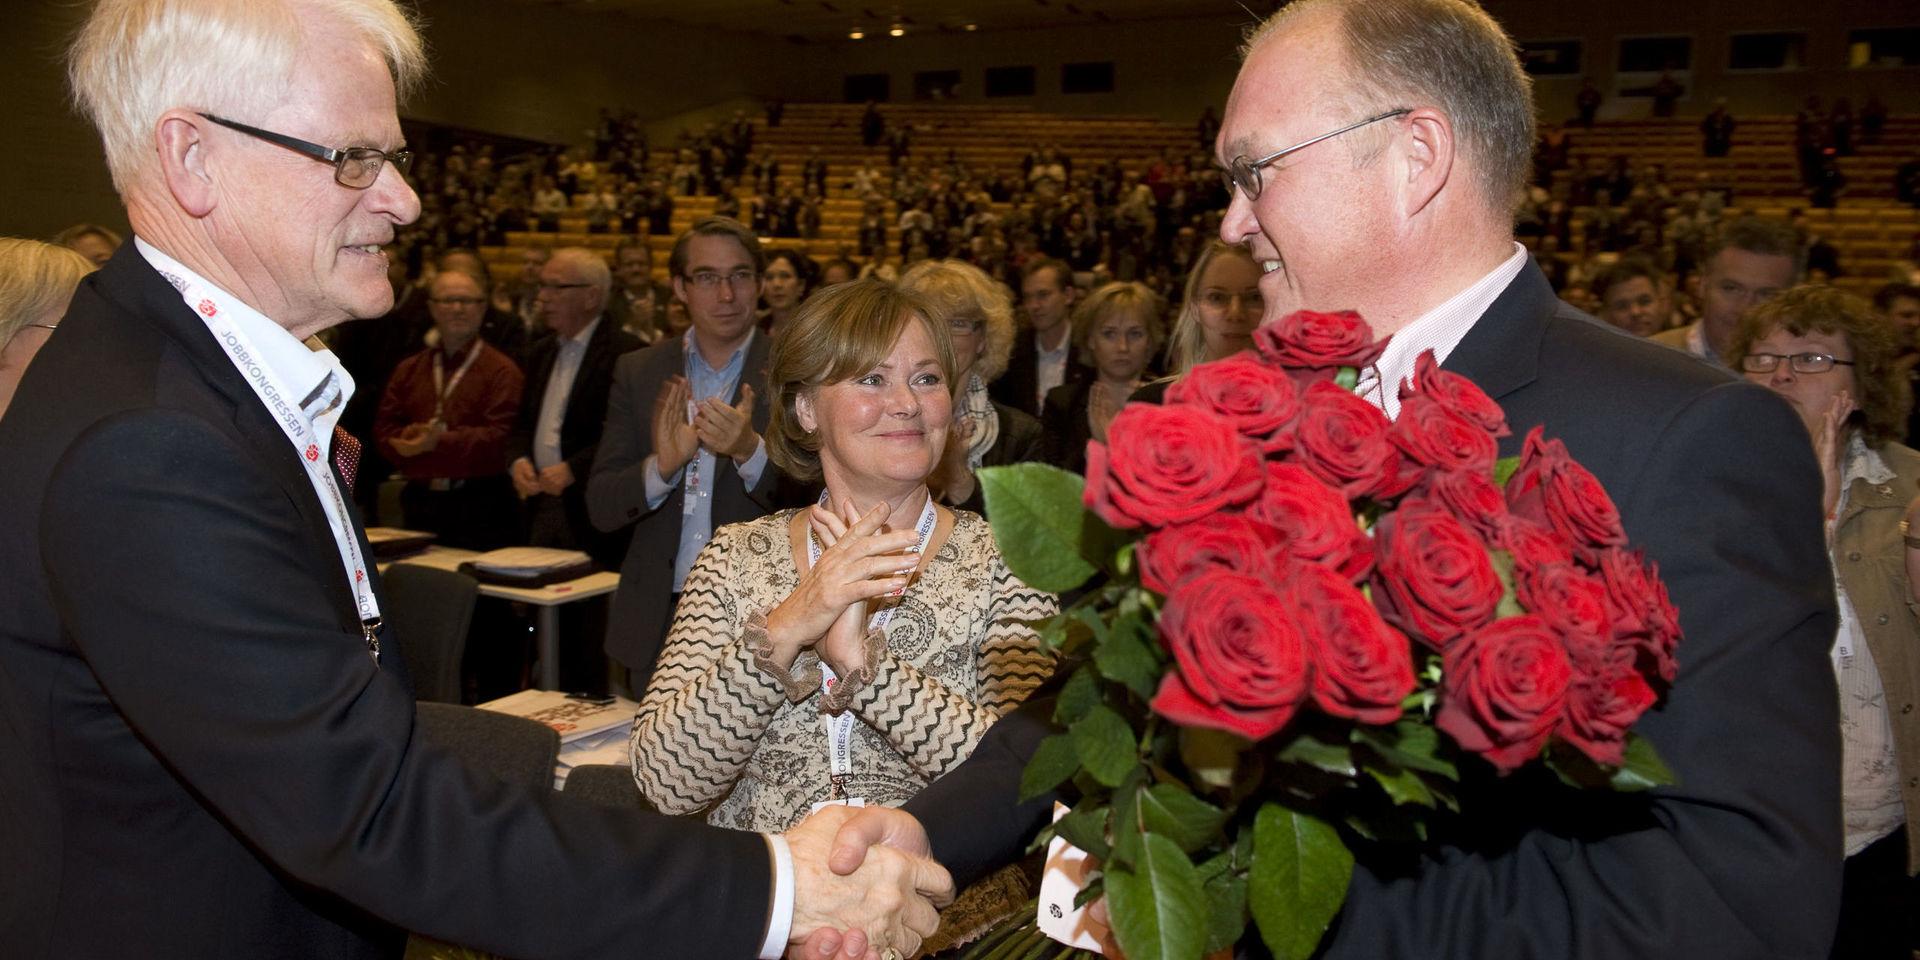 När Göran Persson tog över efter Ingvar Carlsson, fick han ta emot ett fång rosor till ombudens applåder. I mitten Göran Perssons hustru Anitra Steen.